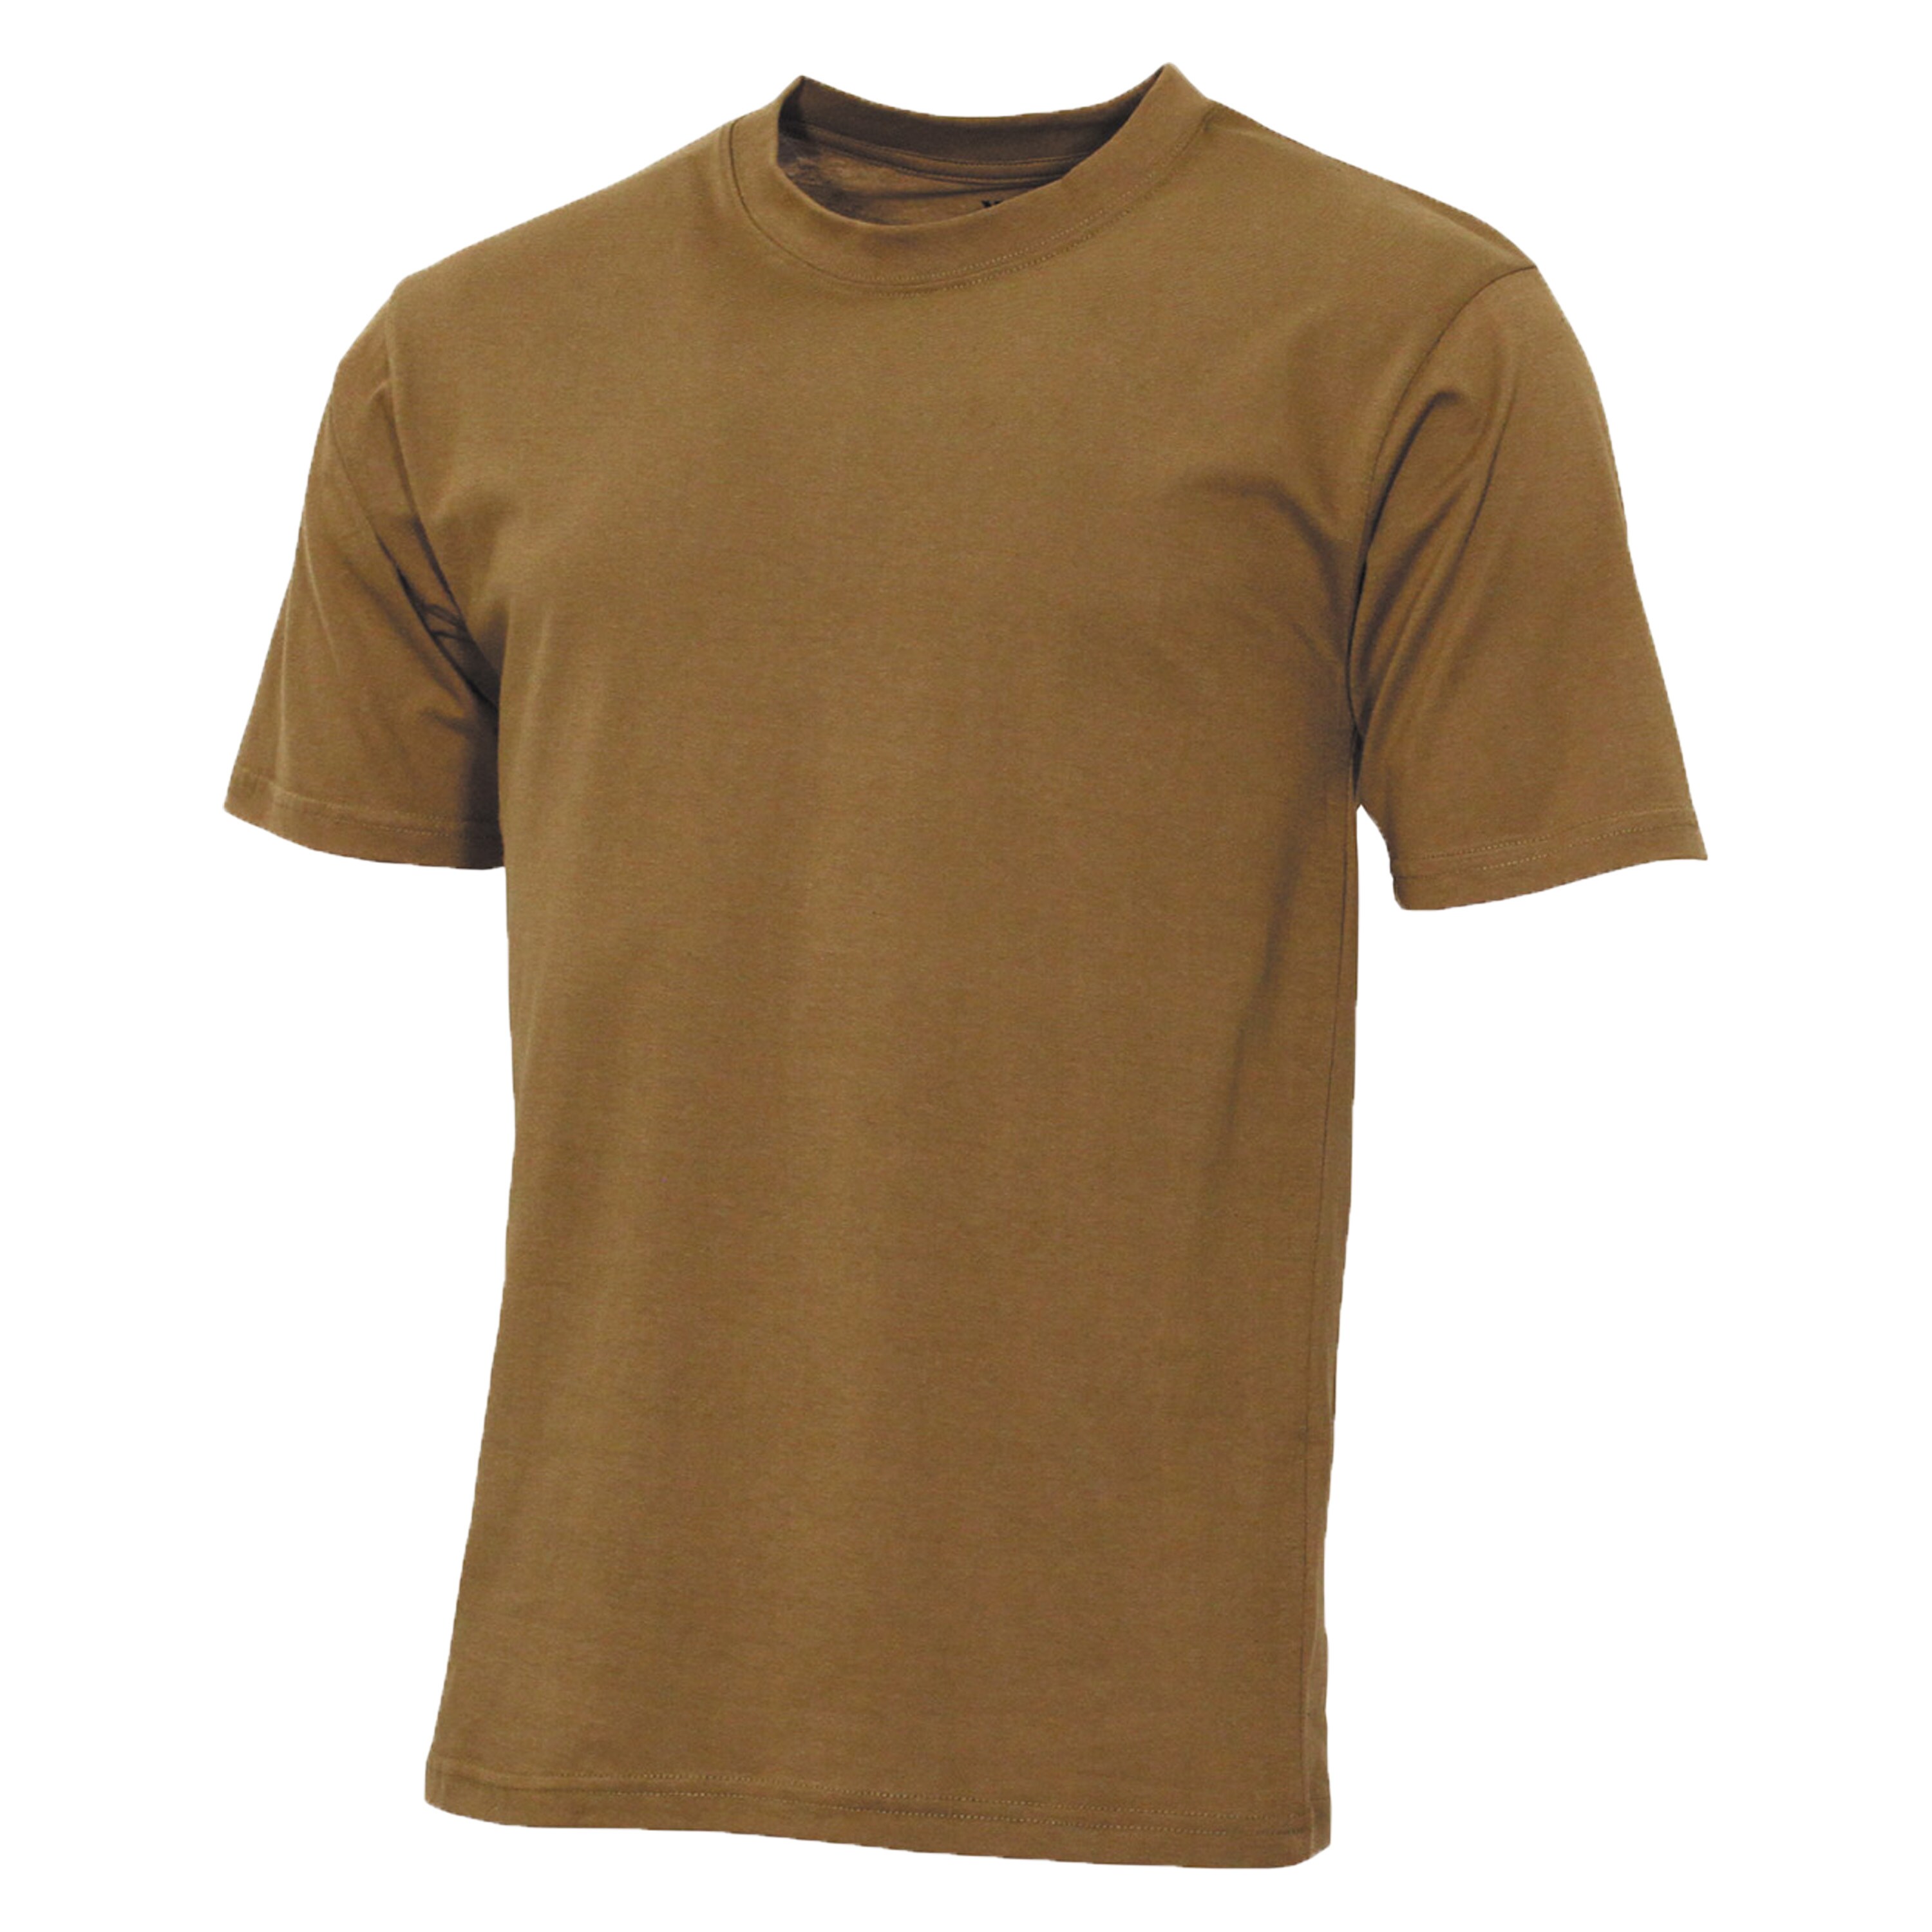 MFH T-Shirt TACTICAL manches courtes polyester noir Gris gris Coyote s-3xl kaki 